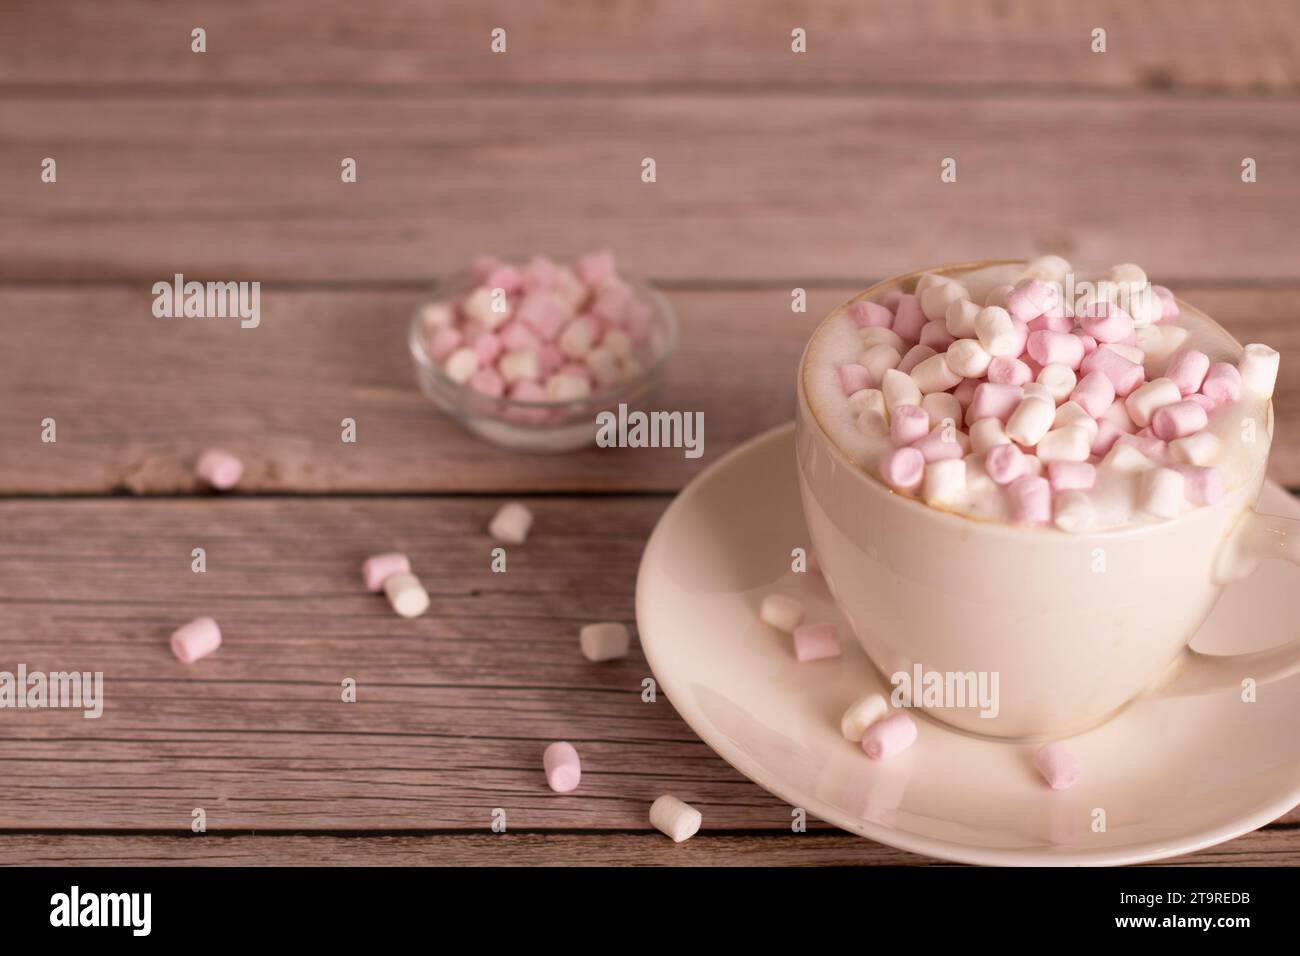 foto postre dulce, malvavisco blanco y rosa se encuentra en una taza de café con espuma, primer plano, hay un espacio vacío, sabroso, cálido, dulces, mesa, bocadillos Foto de stock